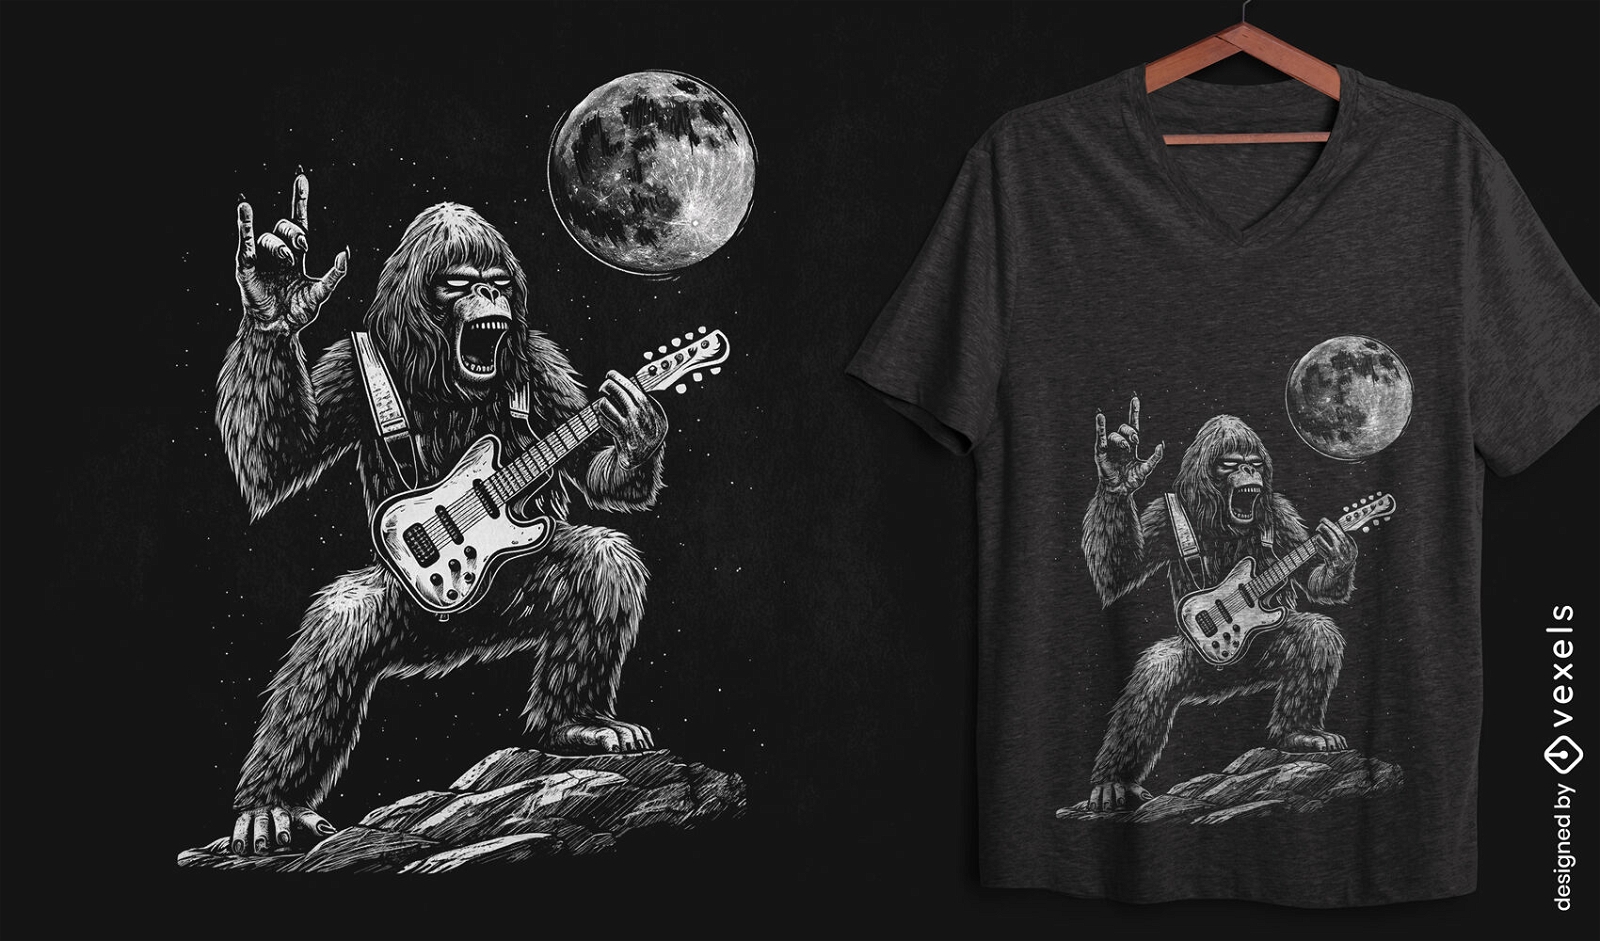 Diseño de camiseta del concierto Moonlight Bigfoot.